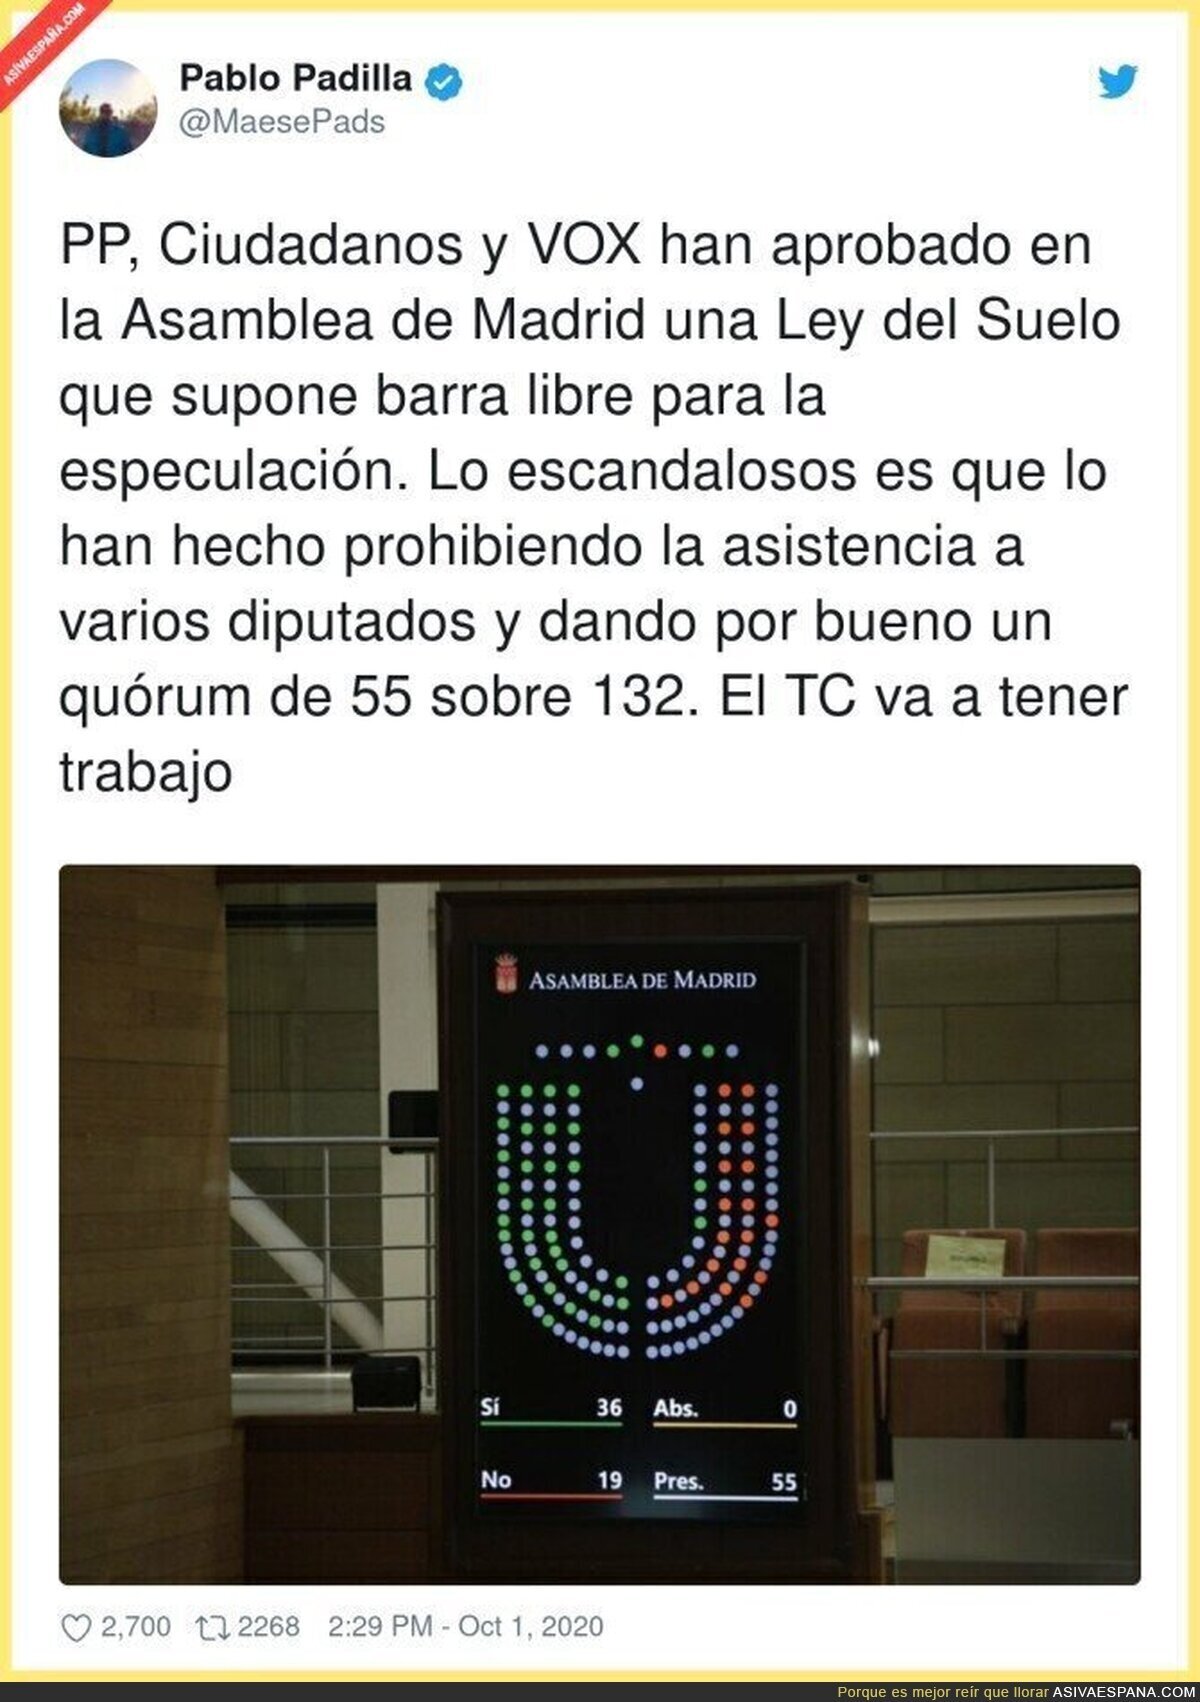 El escándalo que ha ocurrido en la Asamblea de Madrid